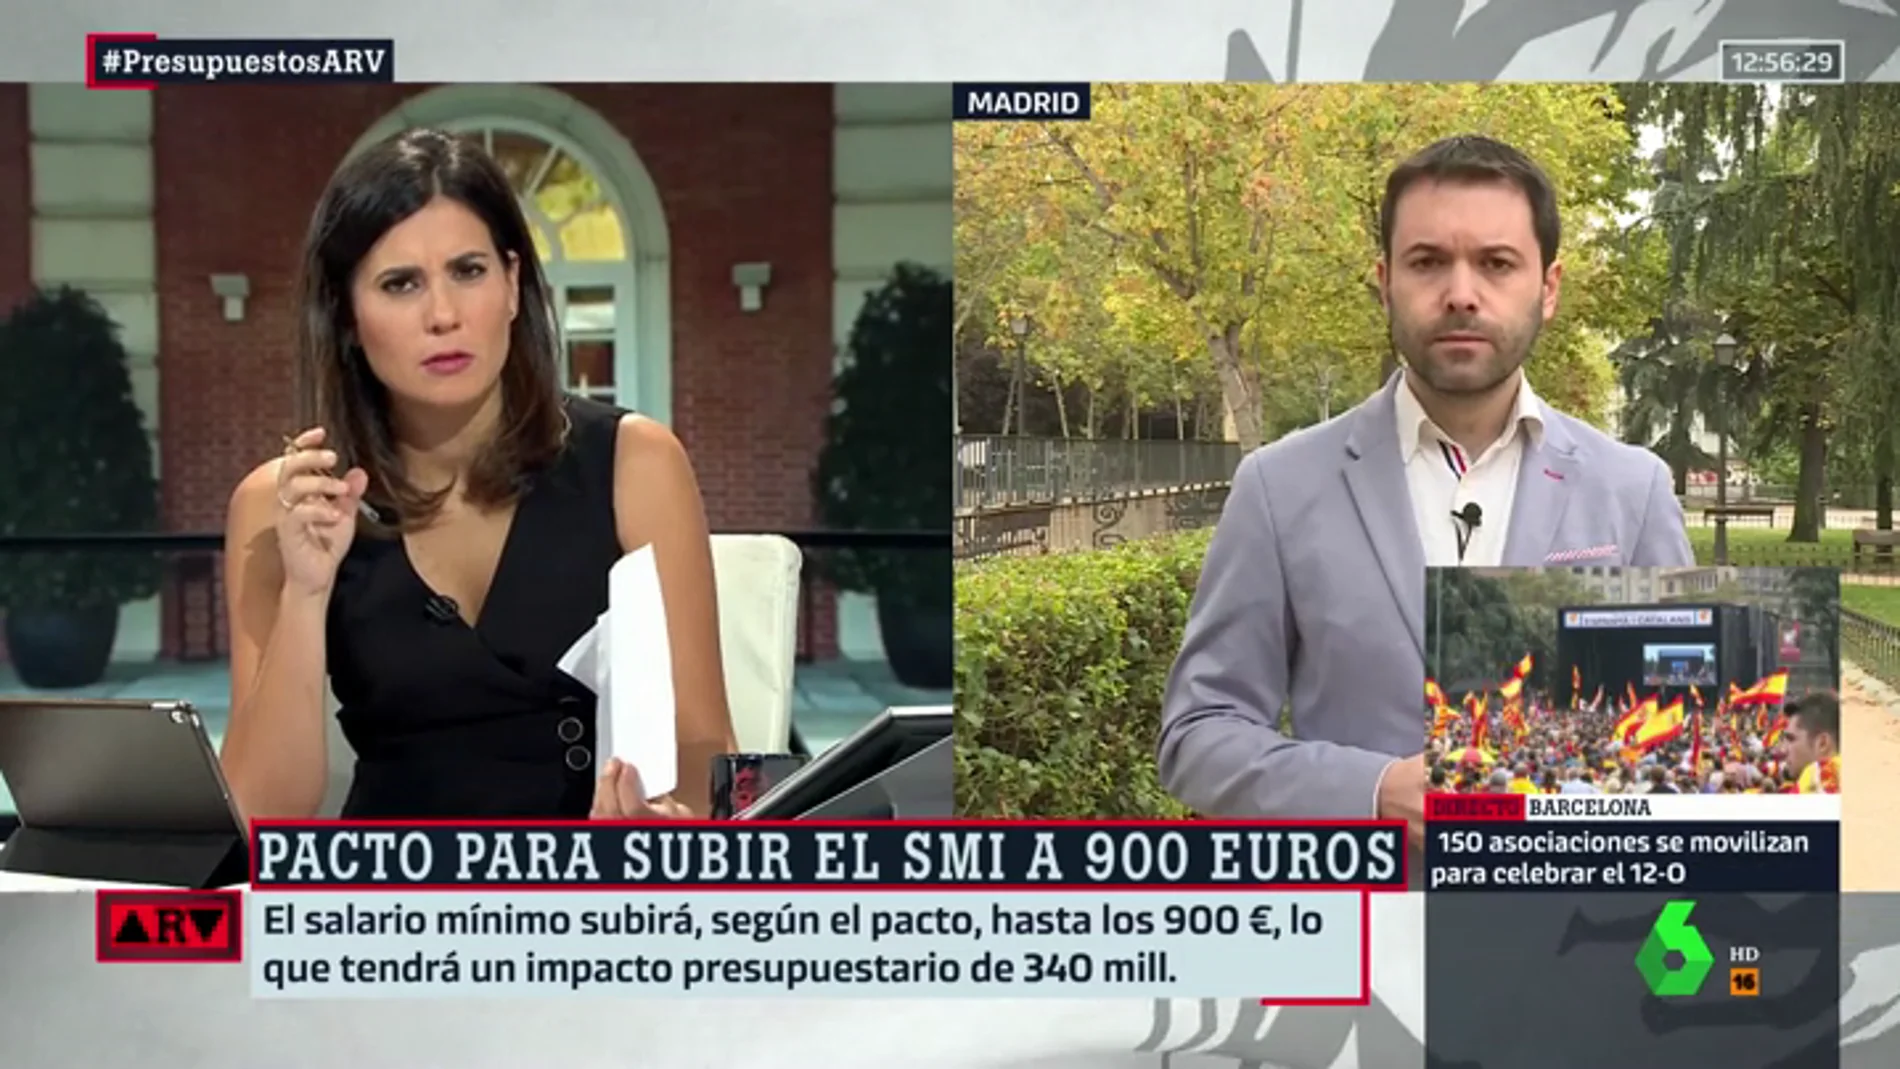 Juan Ramón, tras el acuerdo entre Gobierno y Podemos: "Las previsiones de ingresos casi nunca son realistas"